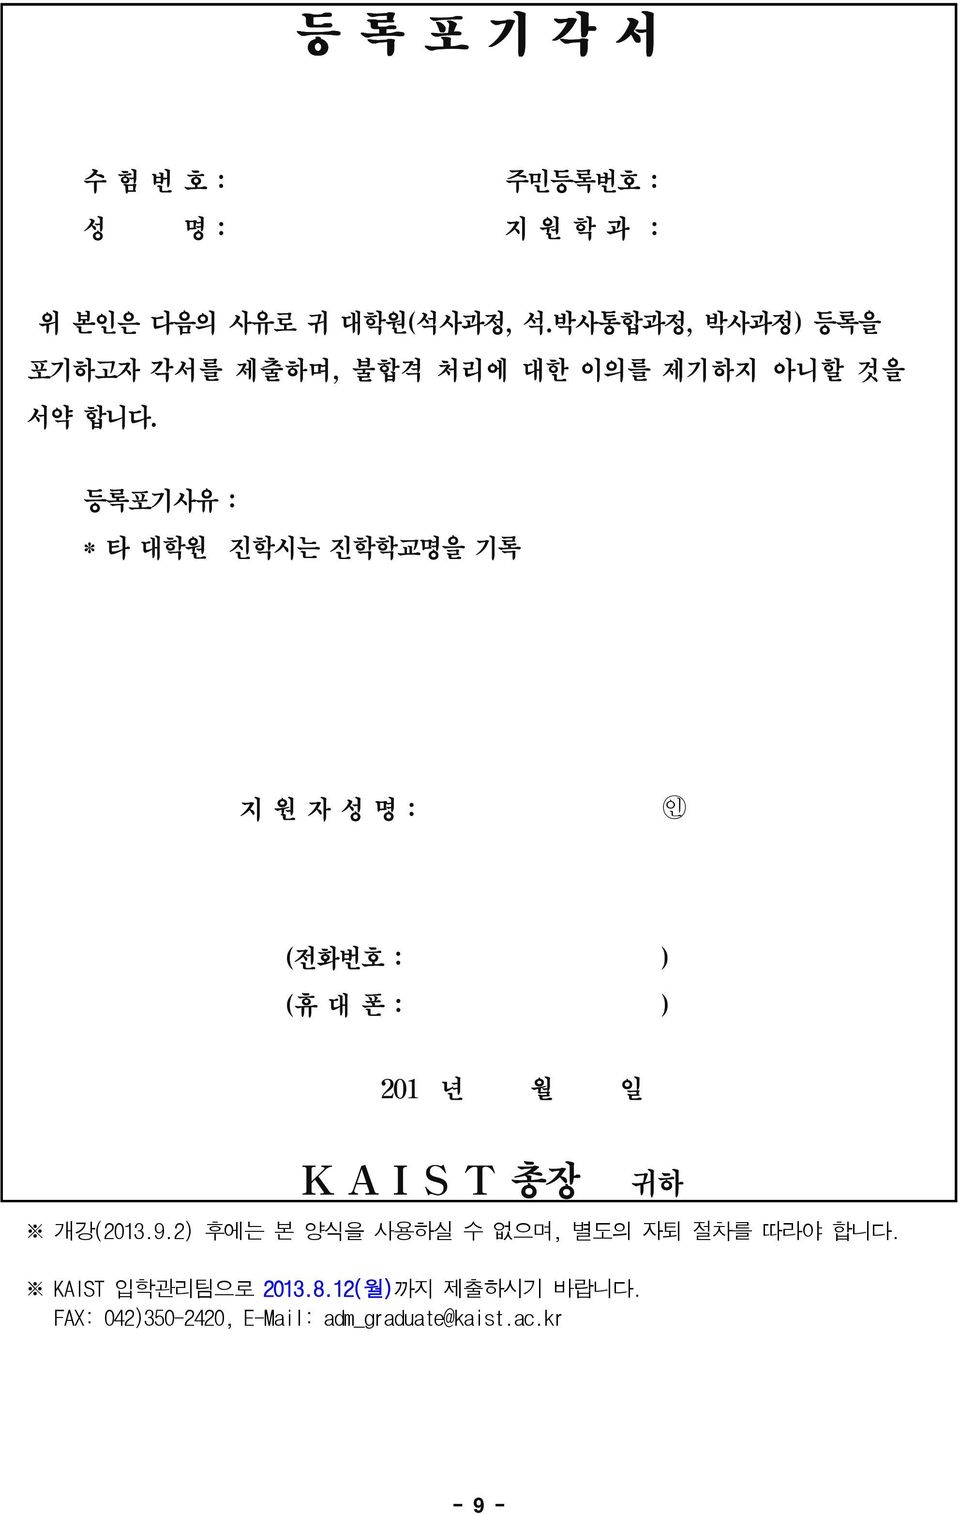 따라야 합니다. KAIST 입학관리팀으로 2013.8.